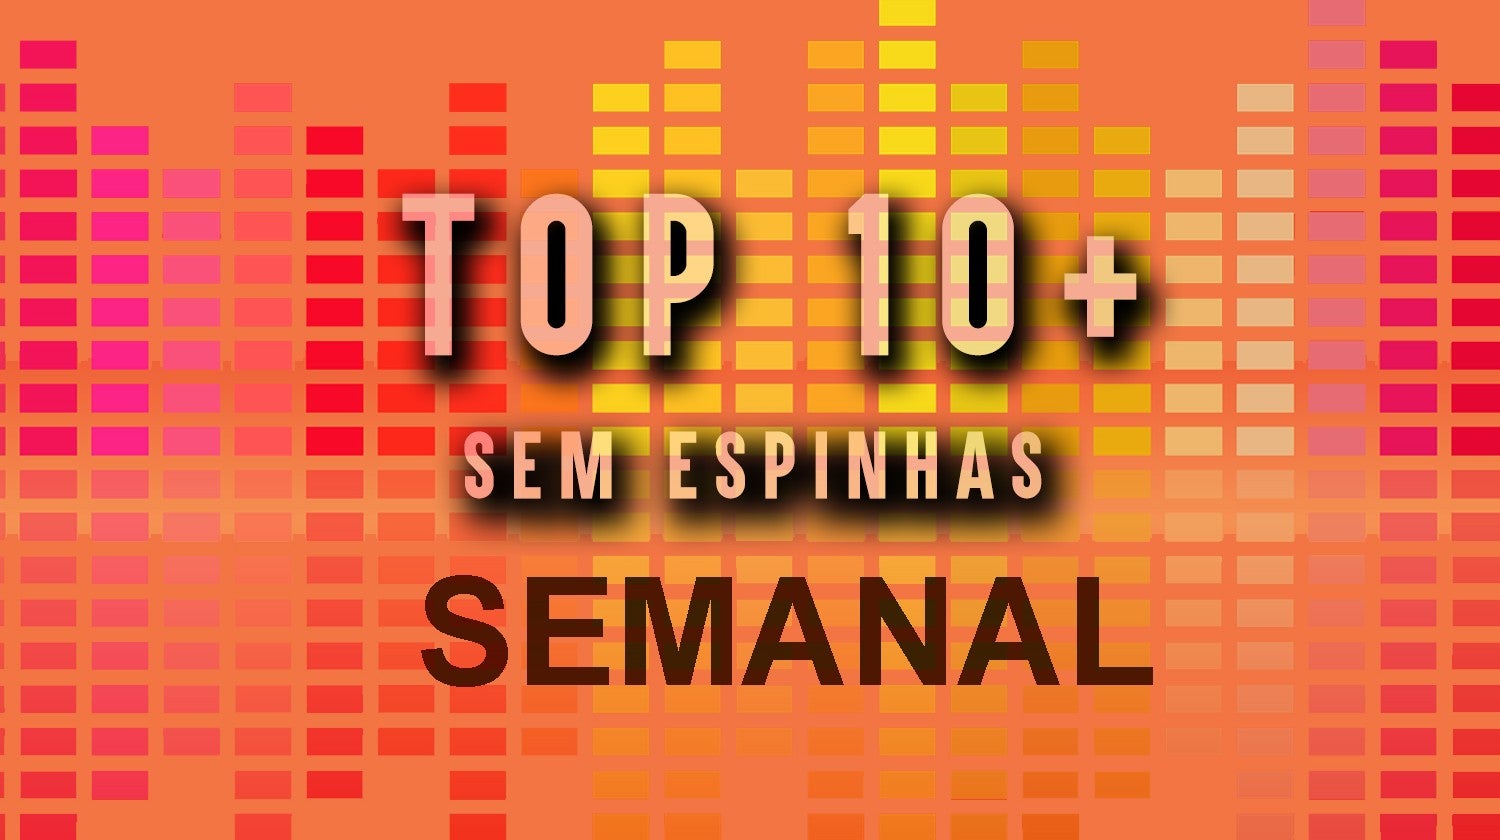 Top - 10 mais Sem Espinhas (Semanal)